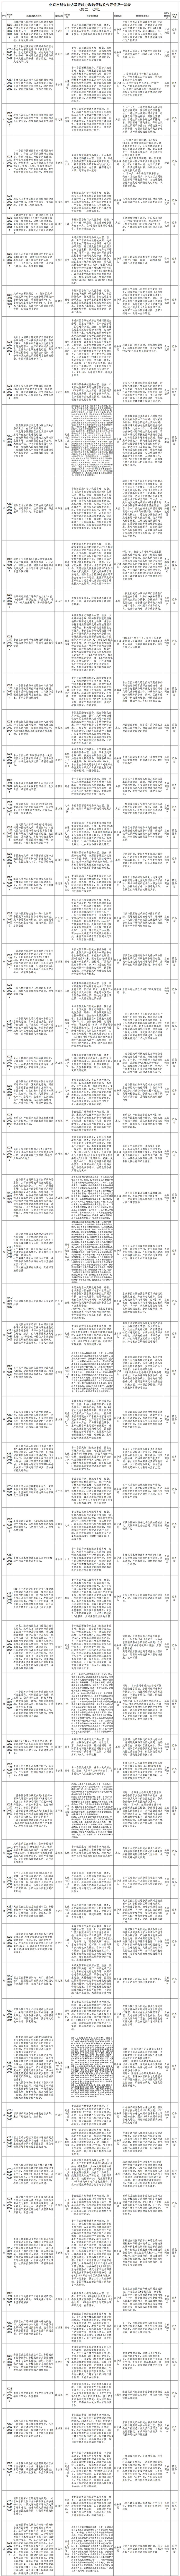 北京市群众信访举报转办和边督边改公开情况一览表(第二十七批).jpg